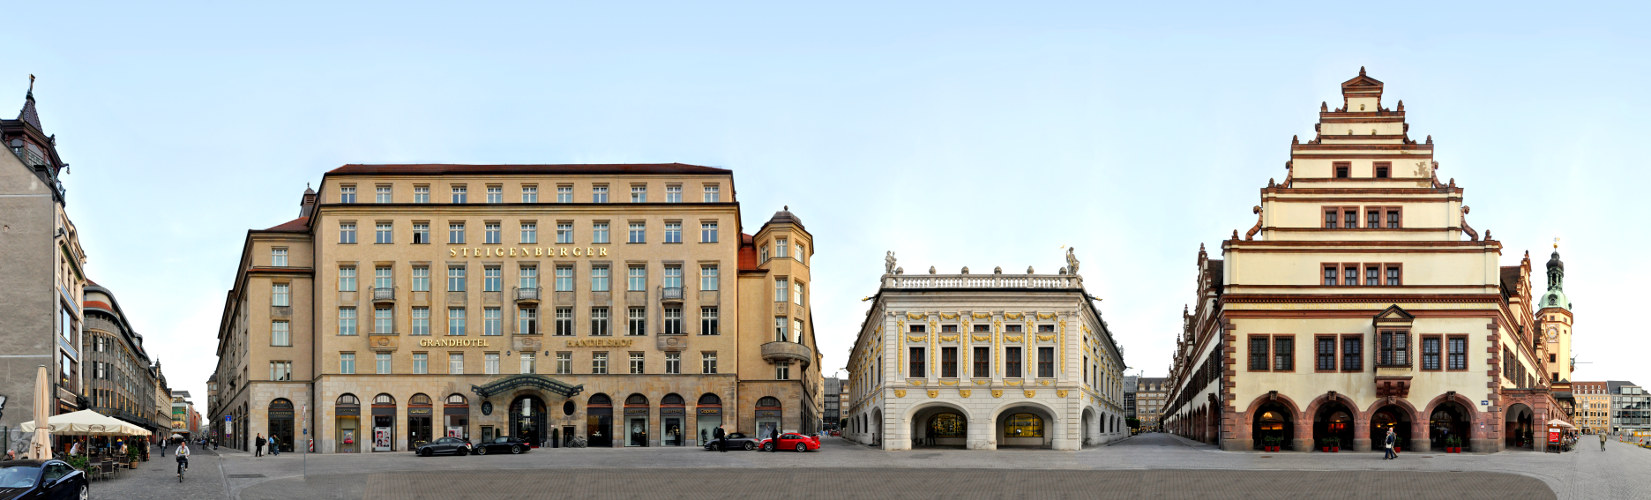 Salzgäßchen - Old City Hall